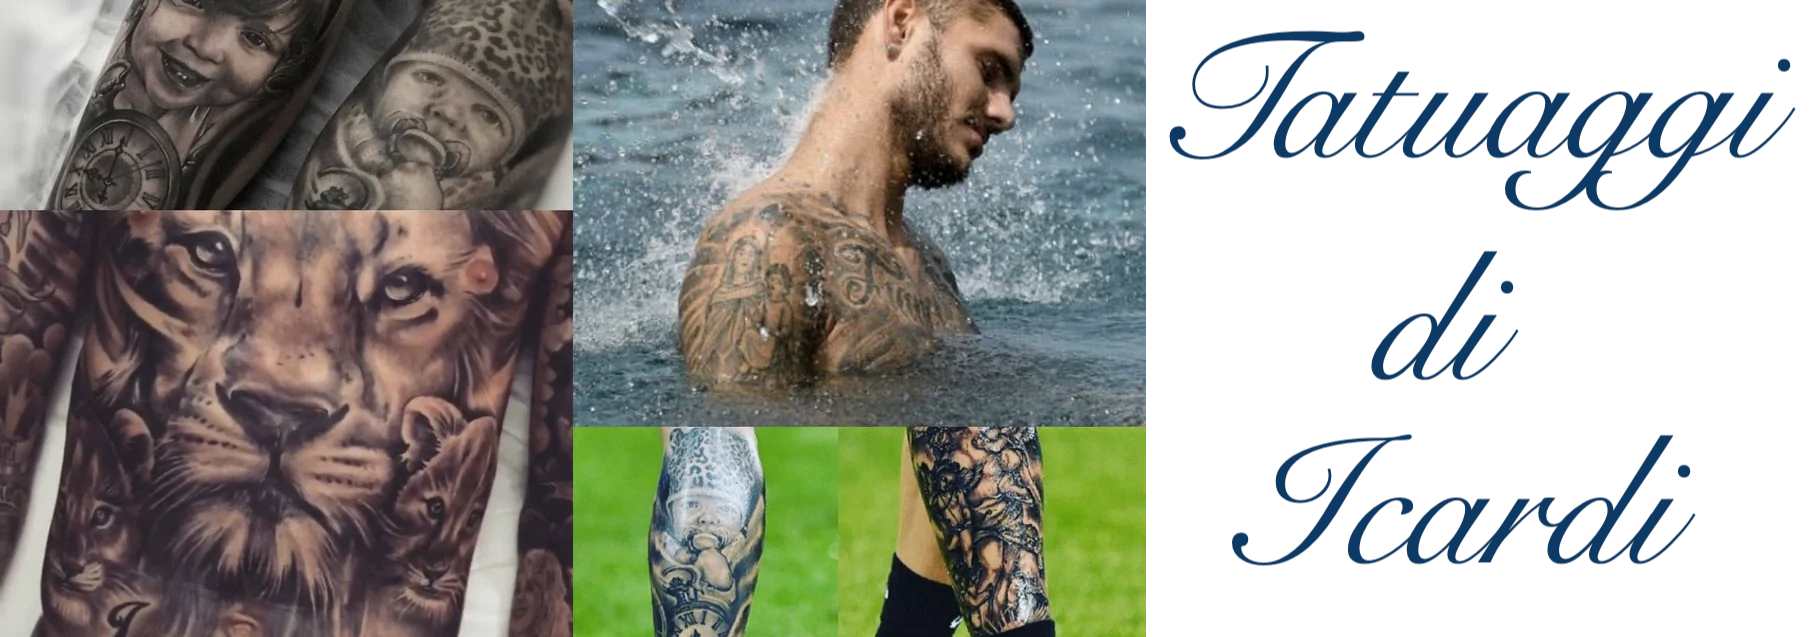 Tatuaggio Tattoo Icardi Significato